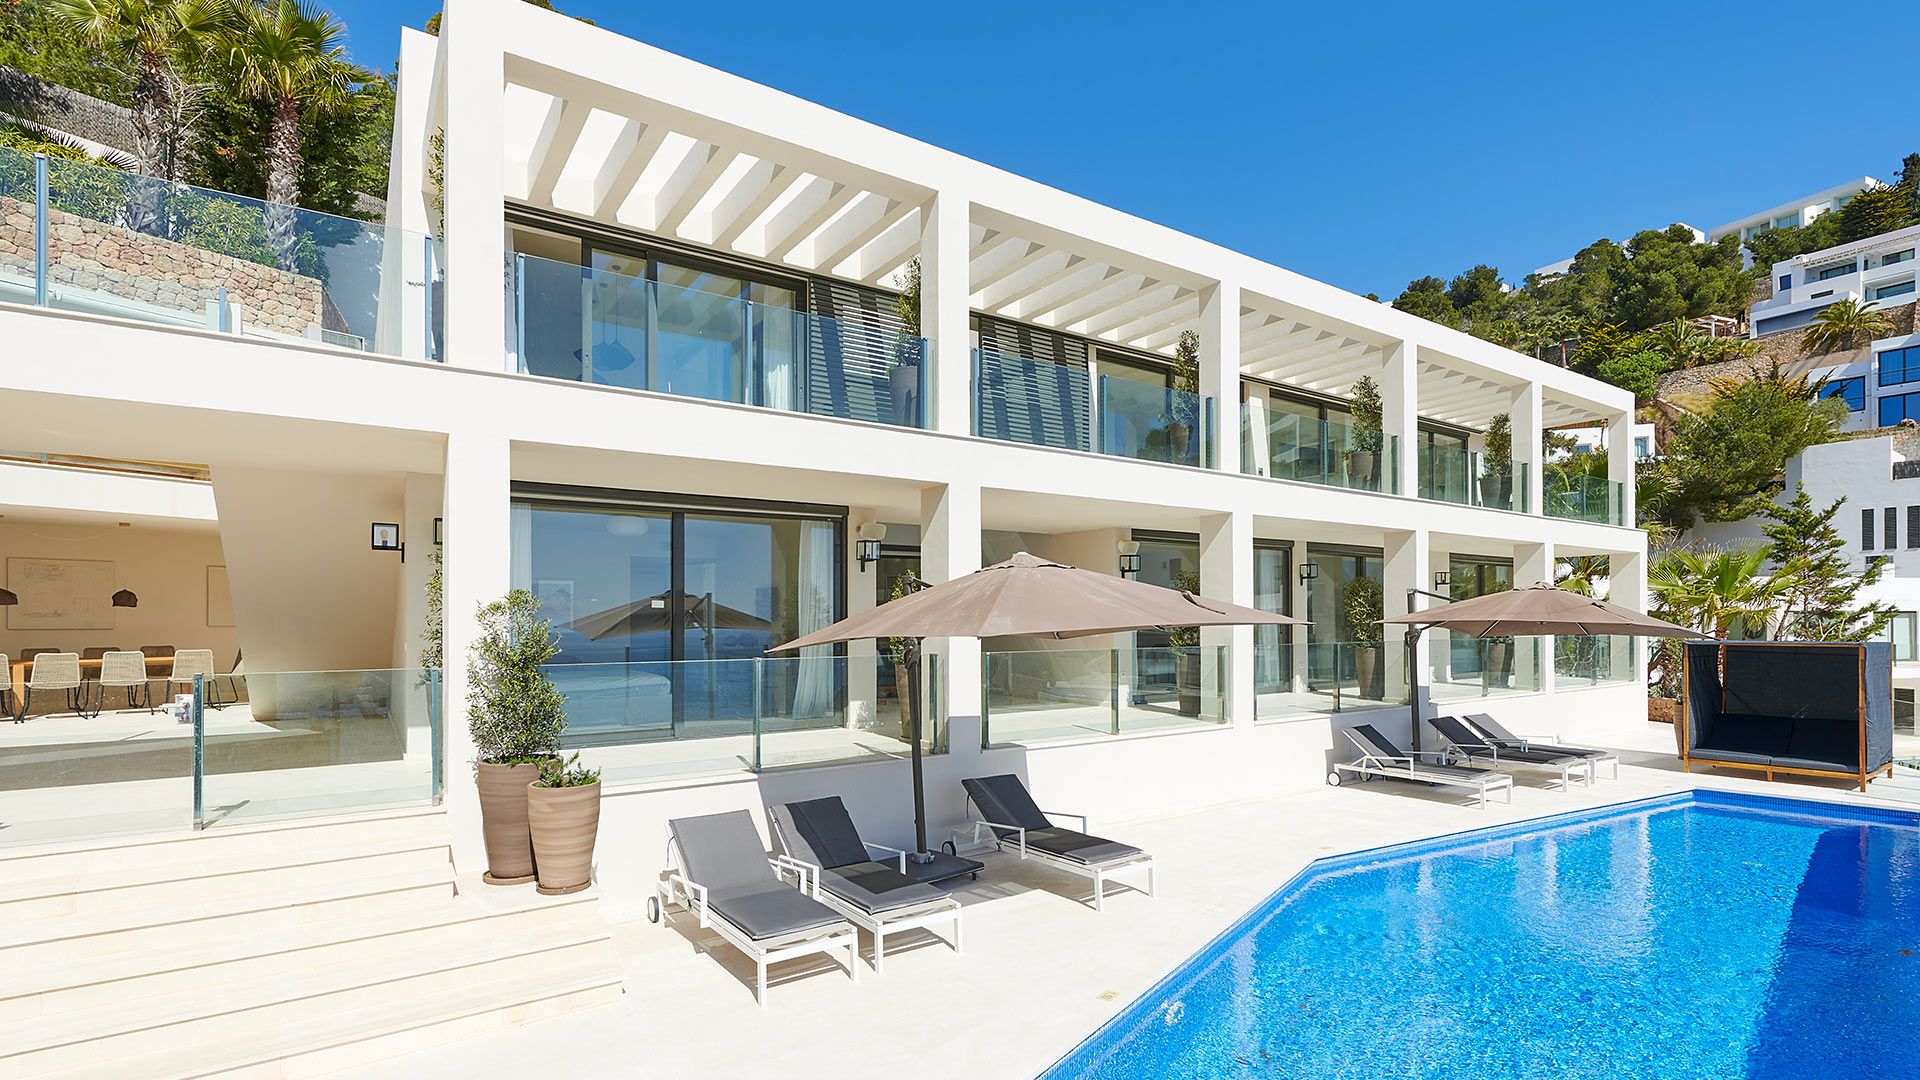 Villa Villa Lolea, Rental in Ibiza